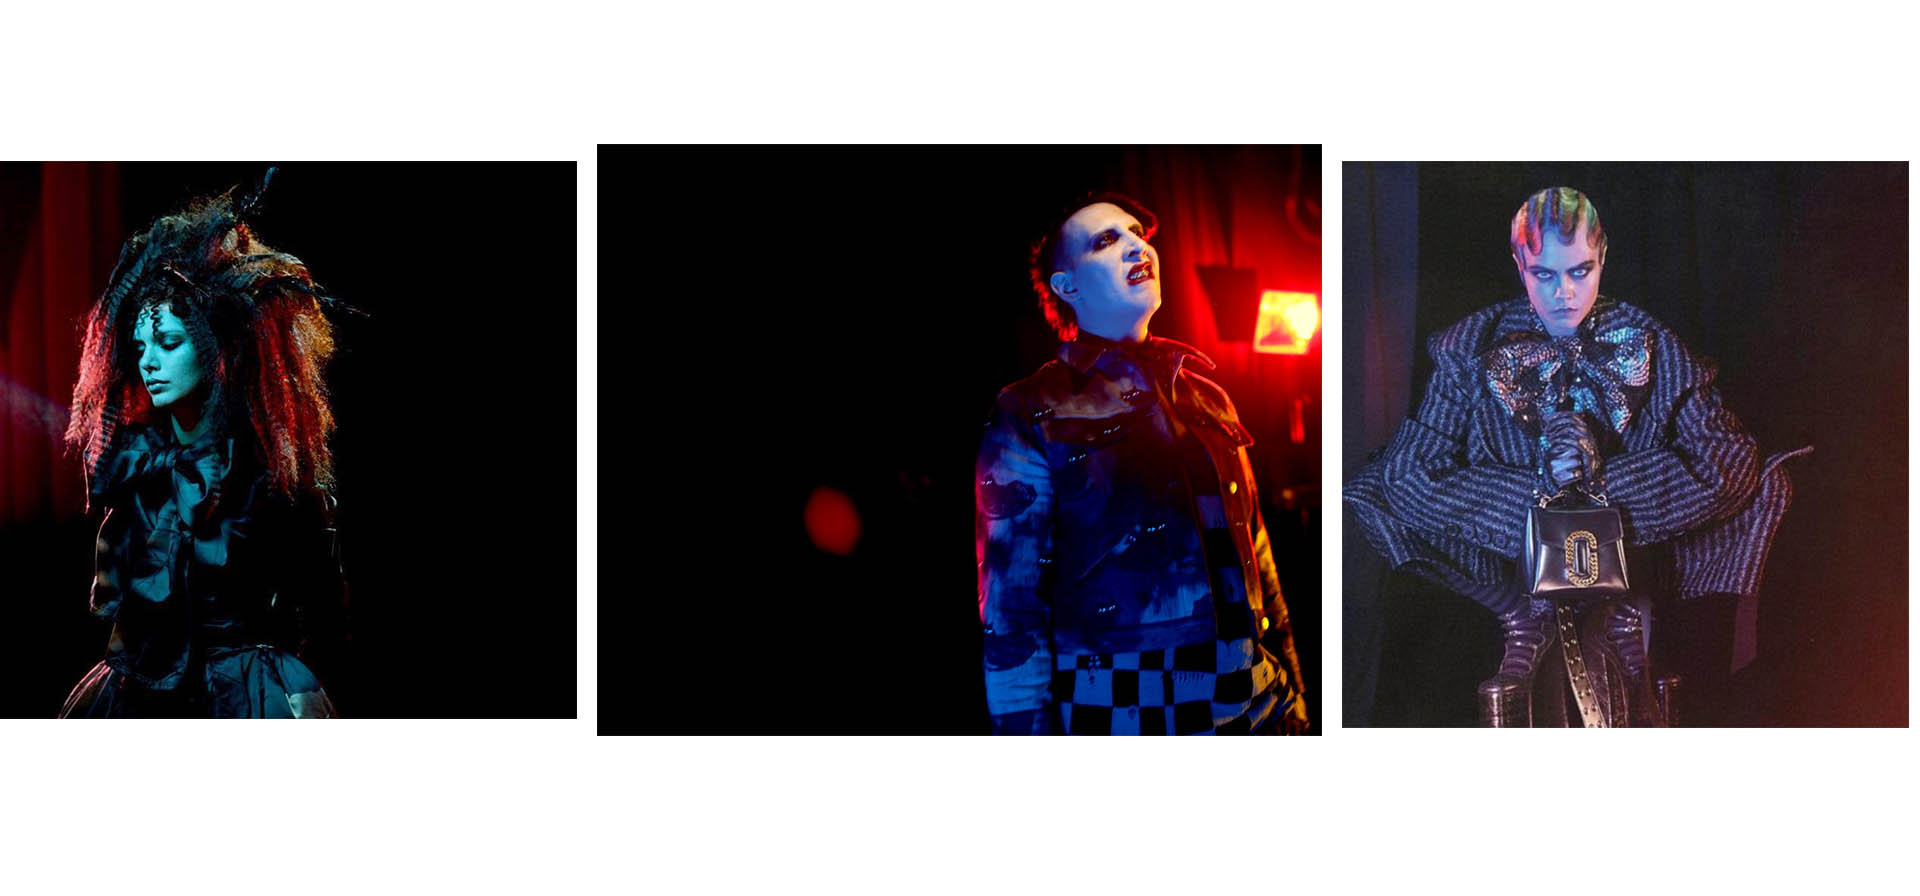 El diseñador estadounidense lanzó su nueva colección a través de un video donde figuras como Cara Delevingne y Marilyn Manson dan vida a un estilo diferente